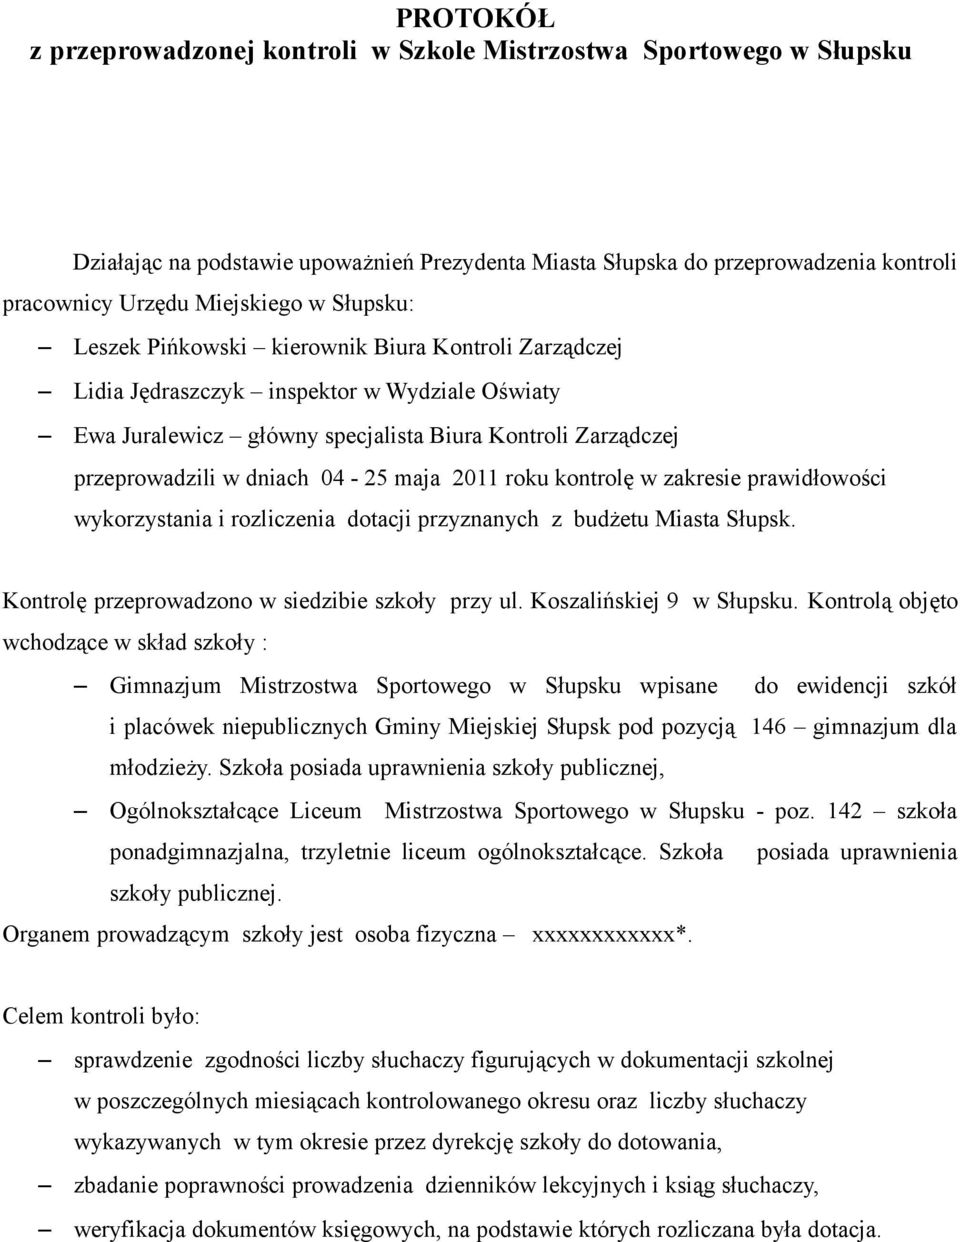 maja 2011 roku kontrolę w zakresie prawidłowości wykorzystania i rozliczenia dotacji przyznanych z budżetu Miasta Słupsk. Kontrolę przeprowadzono w siedzibie szkoły przy ul. Koszalińskiej 9 w Słupsku.